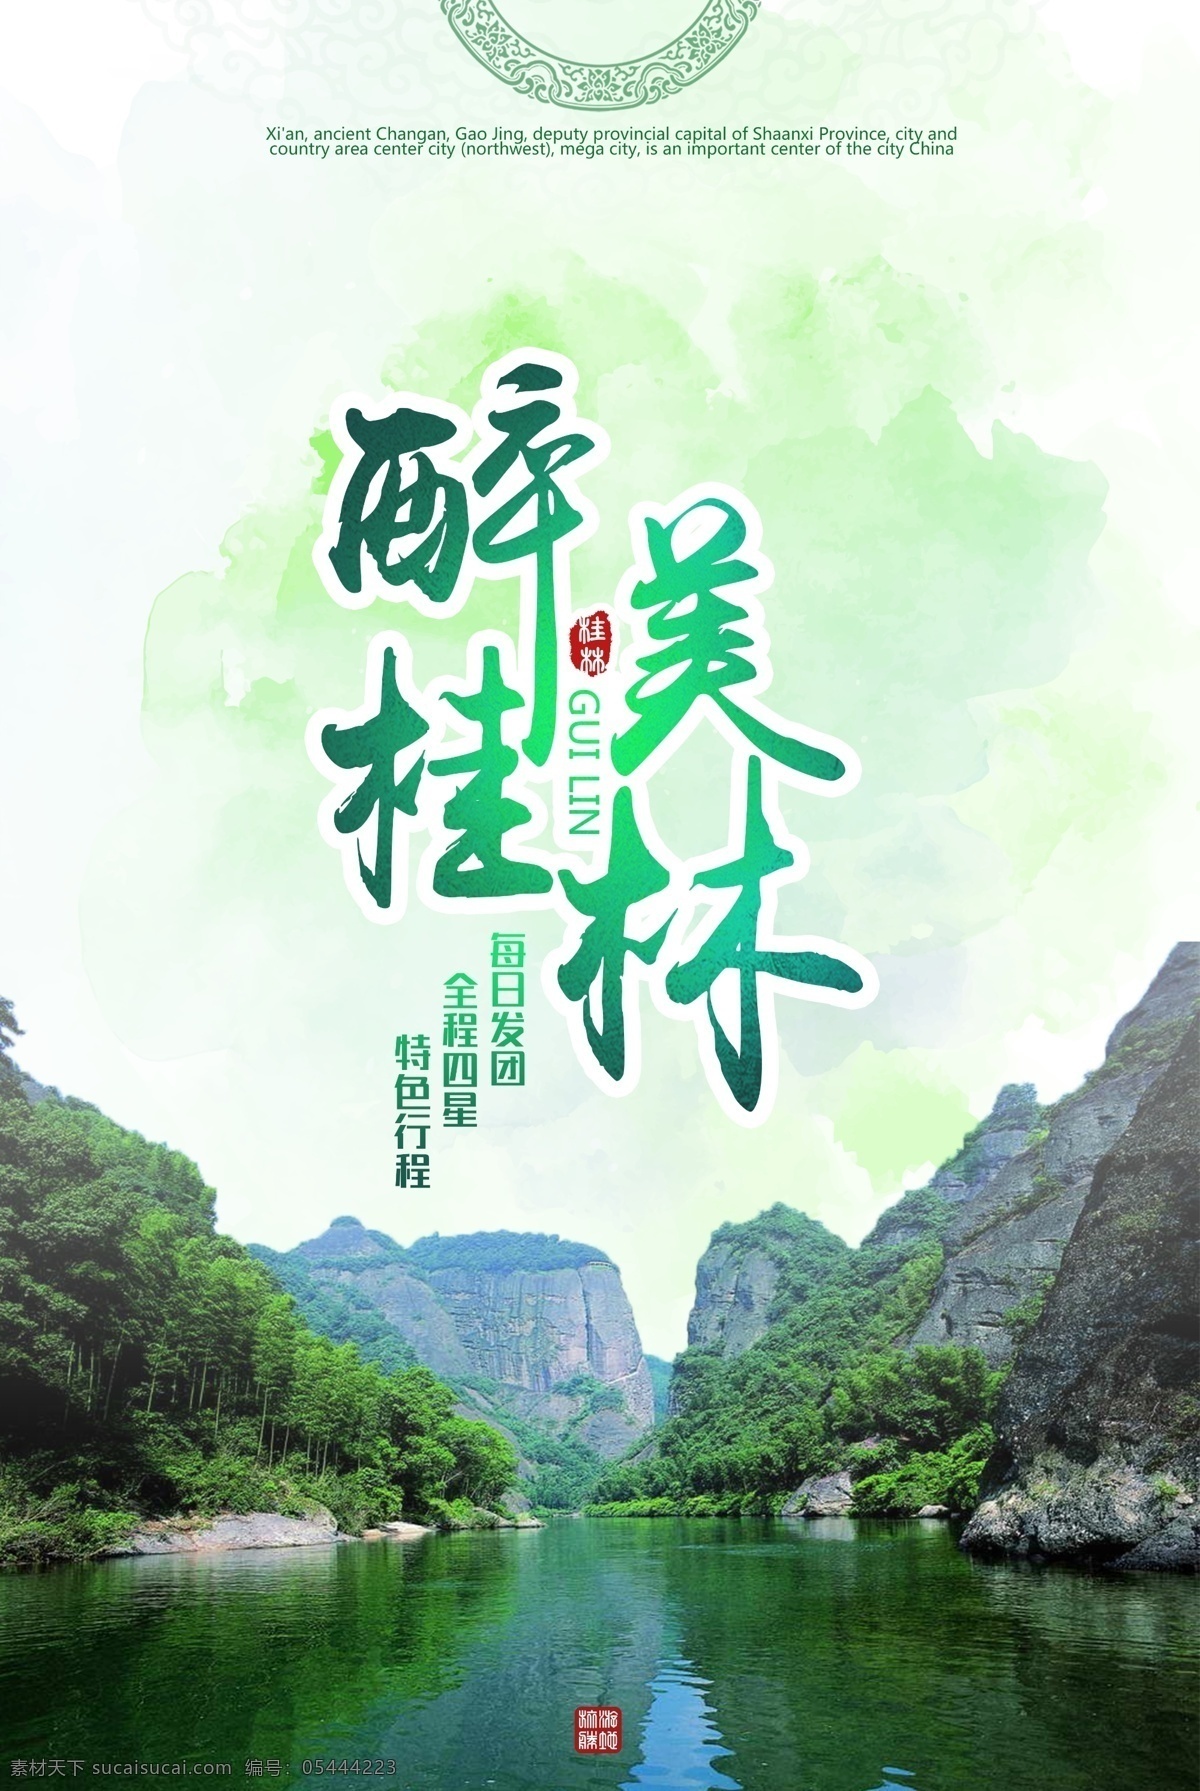 桂林旅游 景点景区 海报 桂林 旅游 景点 景区 旅游景点